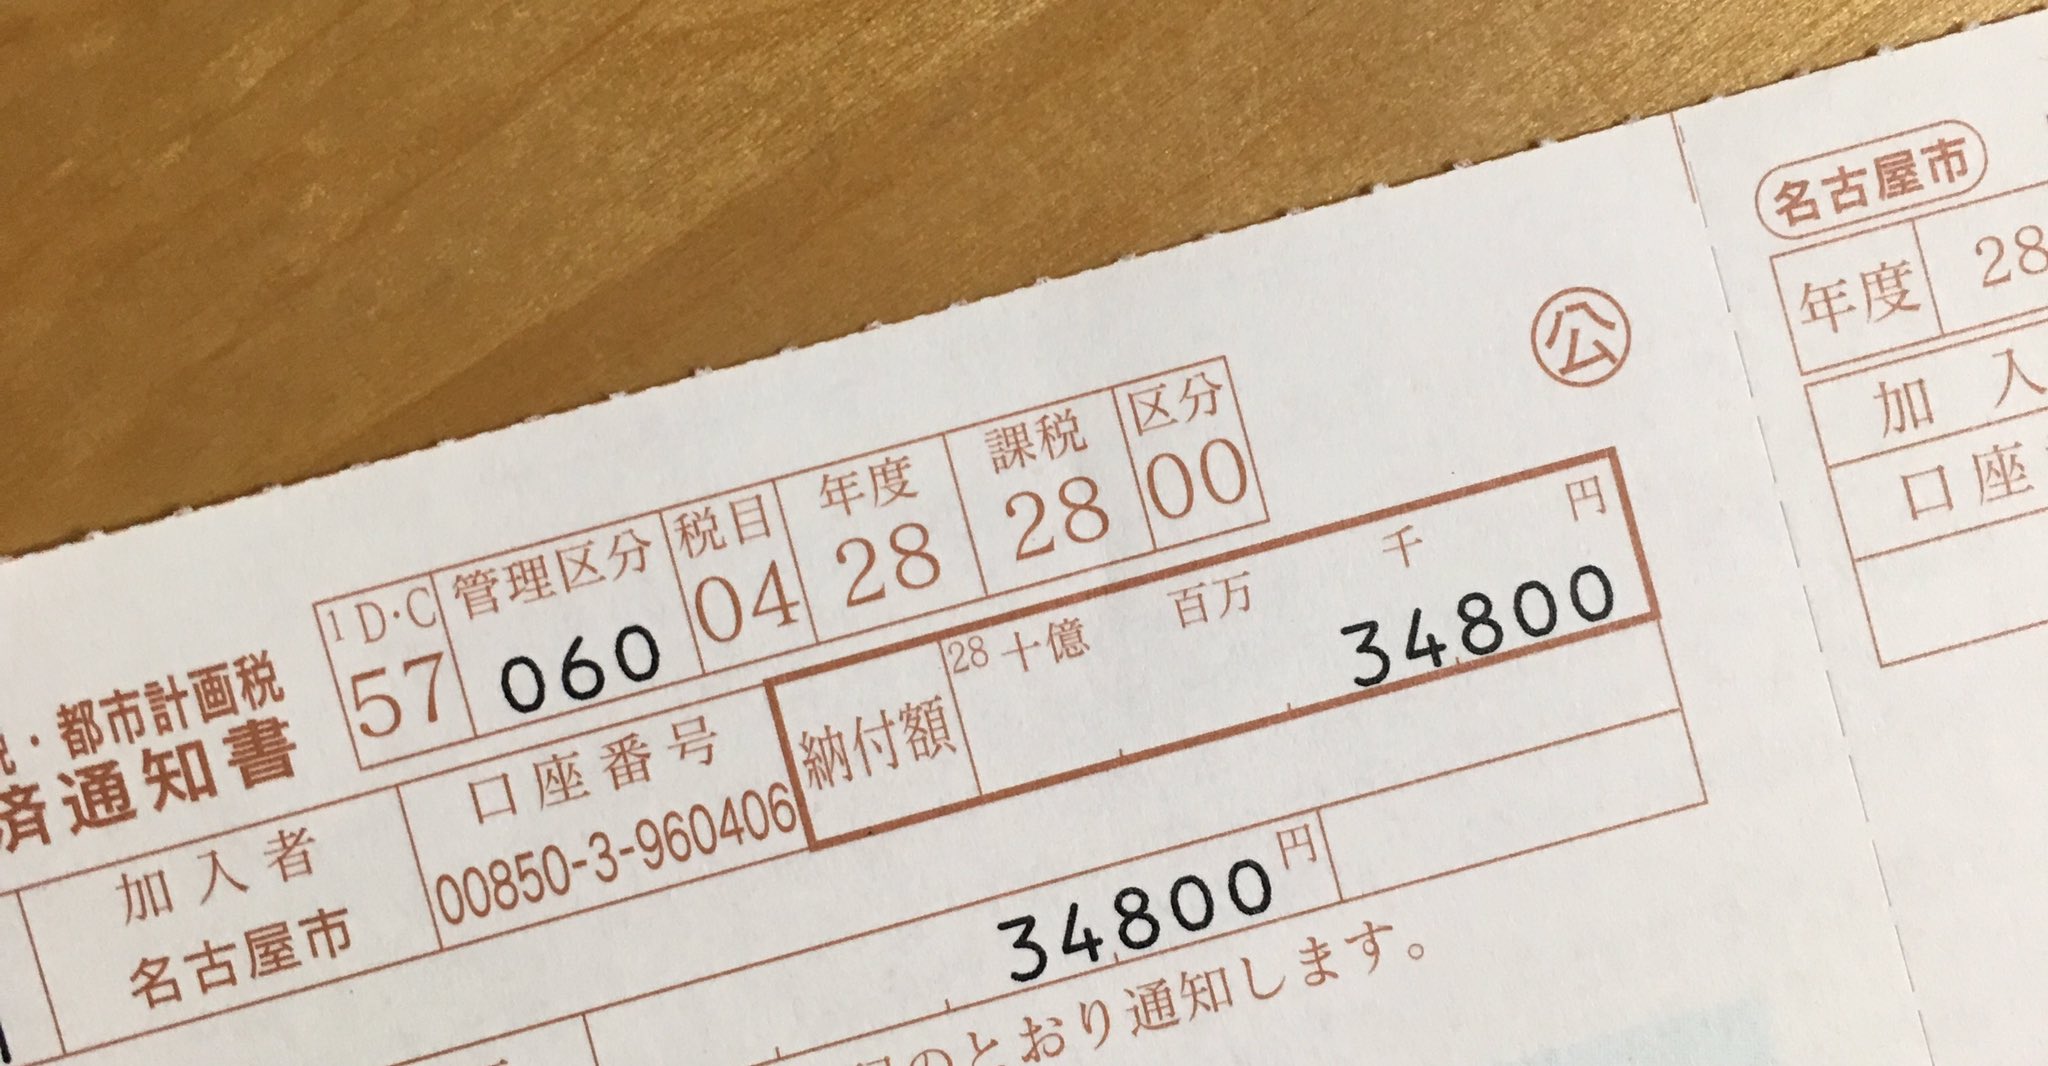 どエンド君 on Twitter "平成28年度の固定資産税納付書。一番乗りは名古屋市でした。昨年比100円アップ